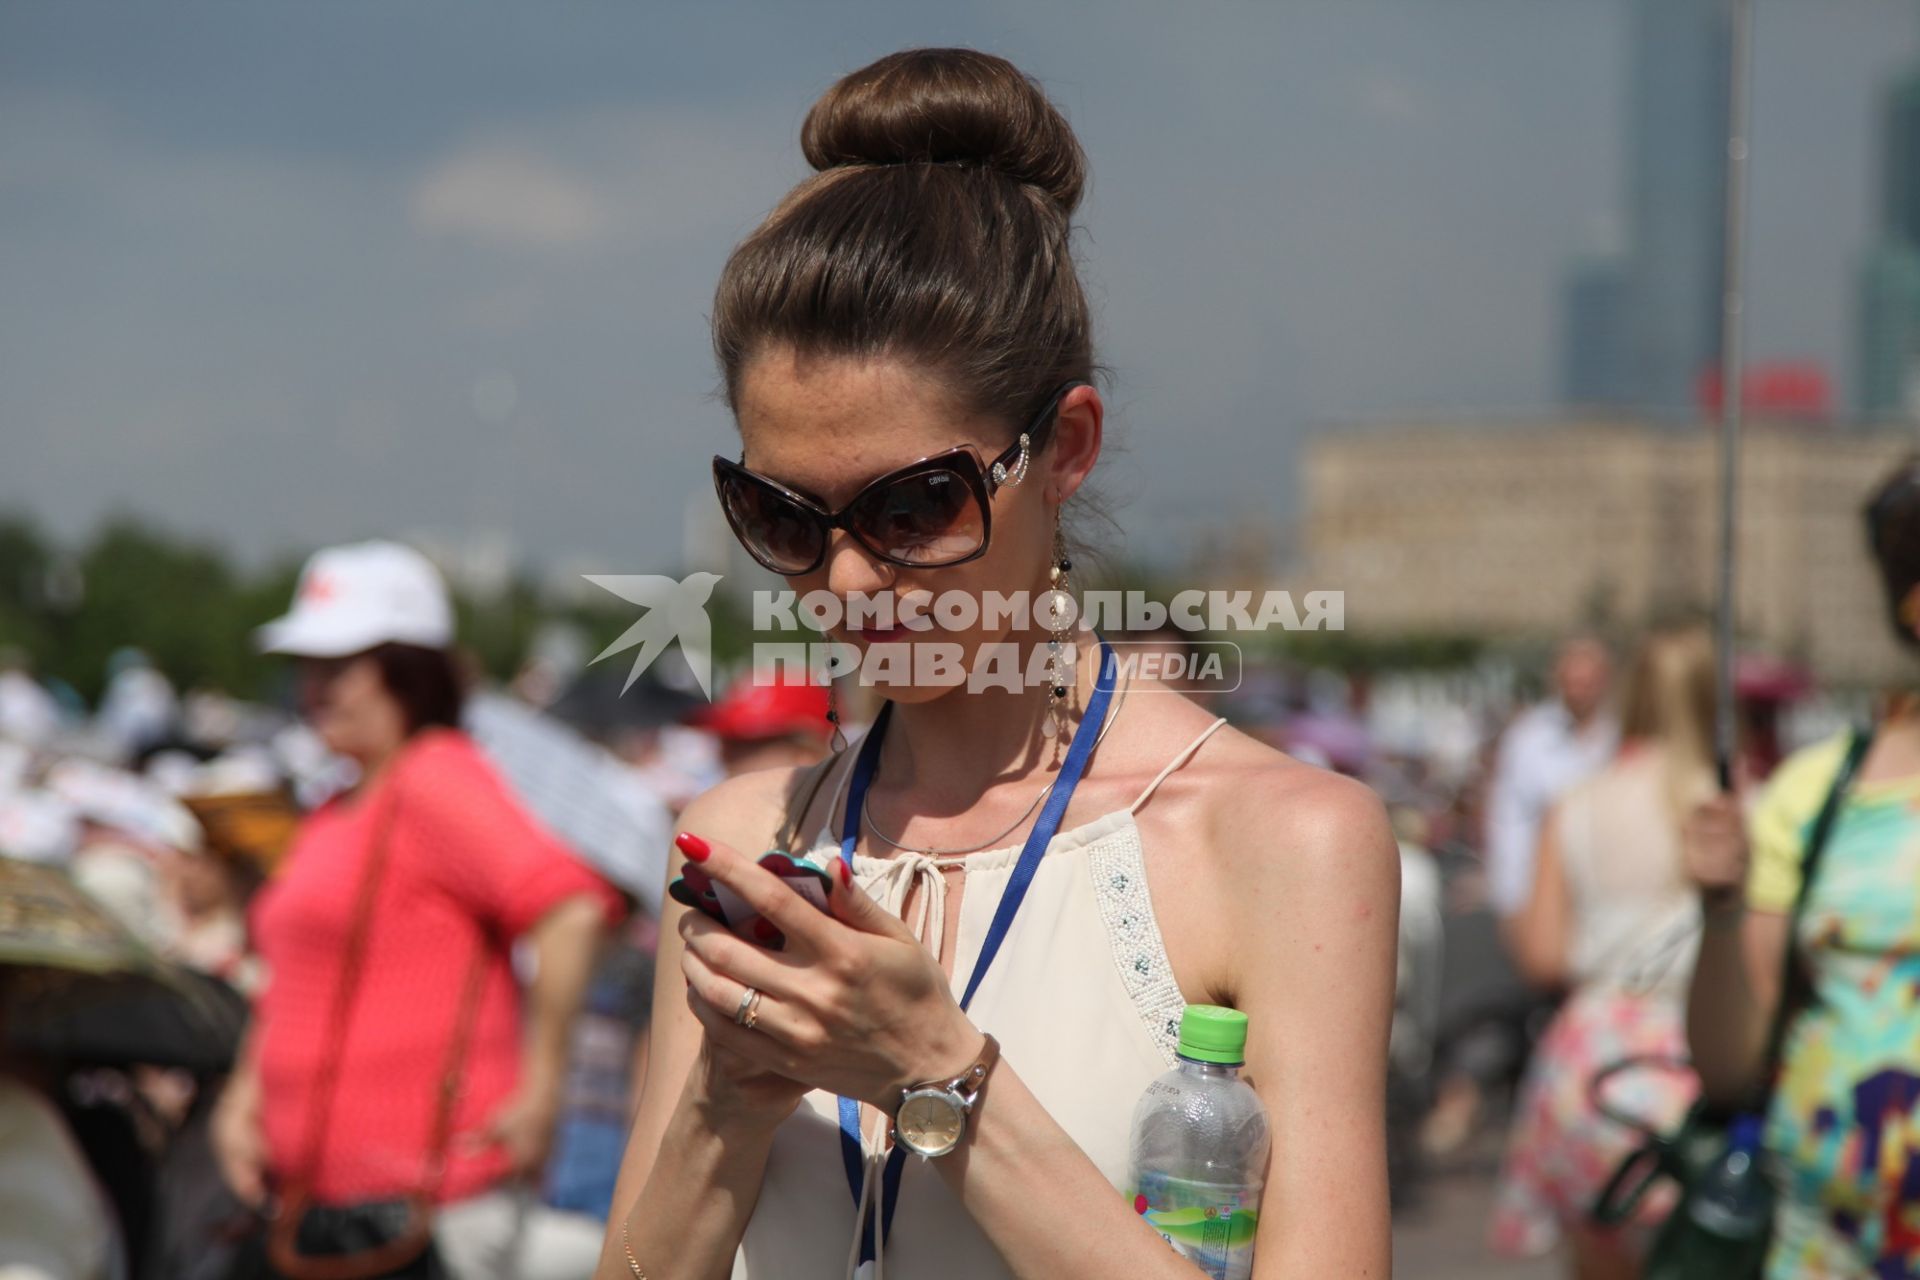 Москва. Девушка с мобильным телефоном.